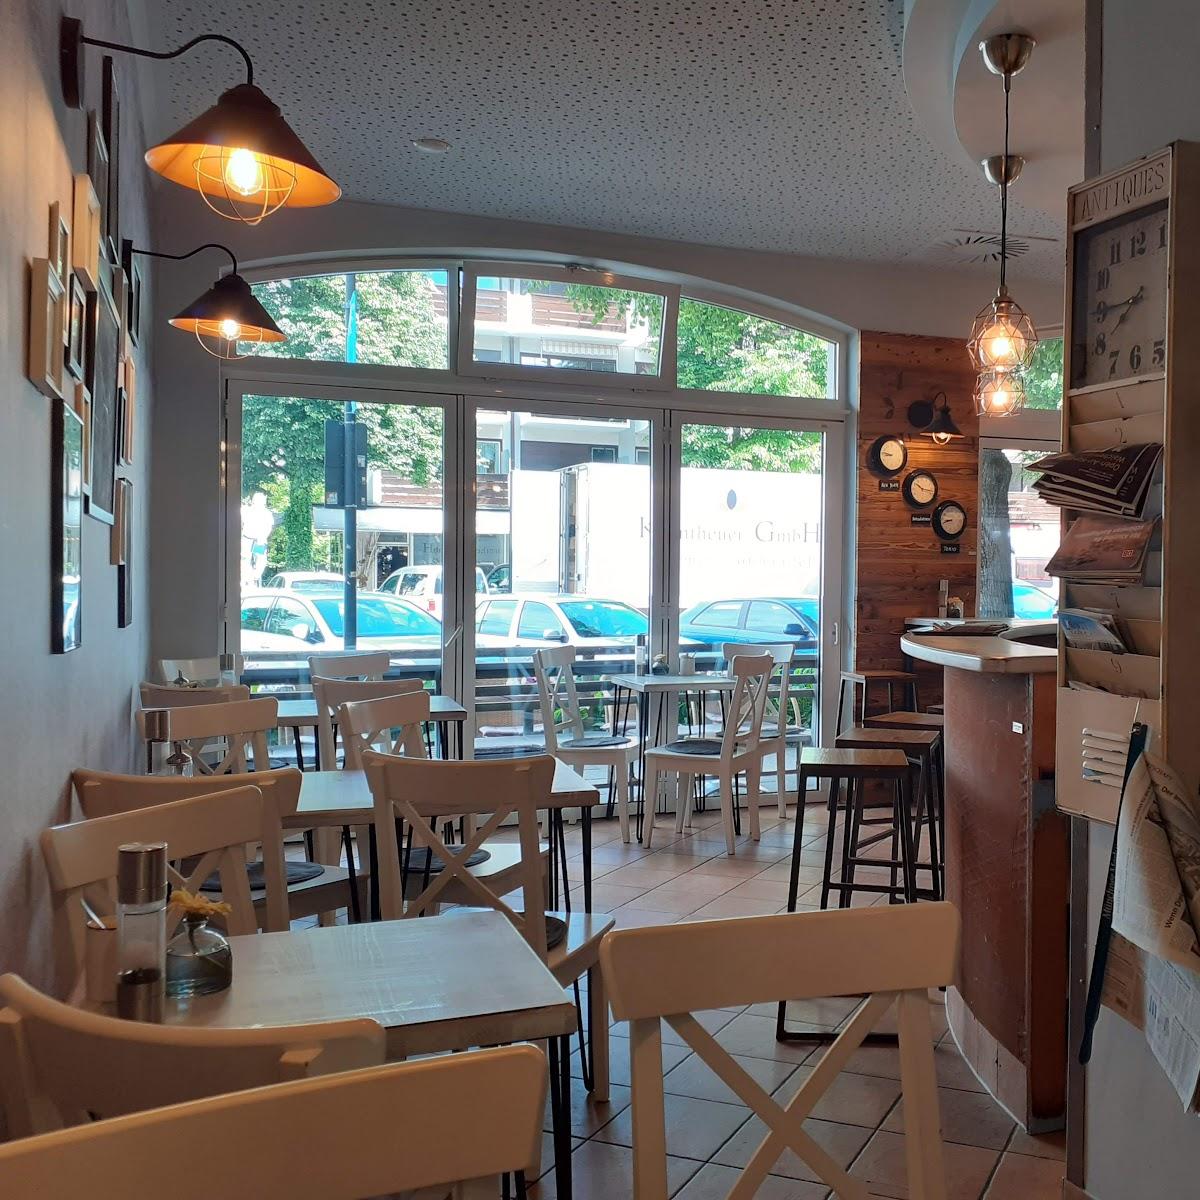 Restaurant "Die Kaffee Börse" in Garmisch-Partenkirchen